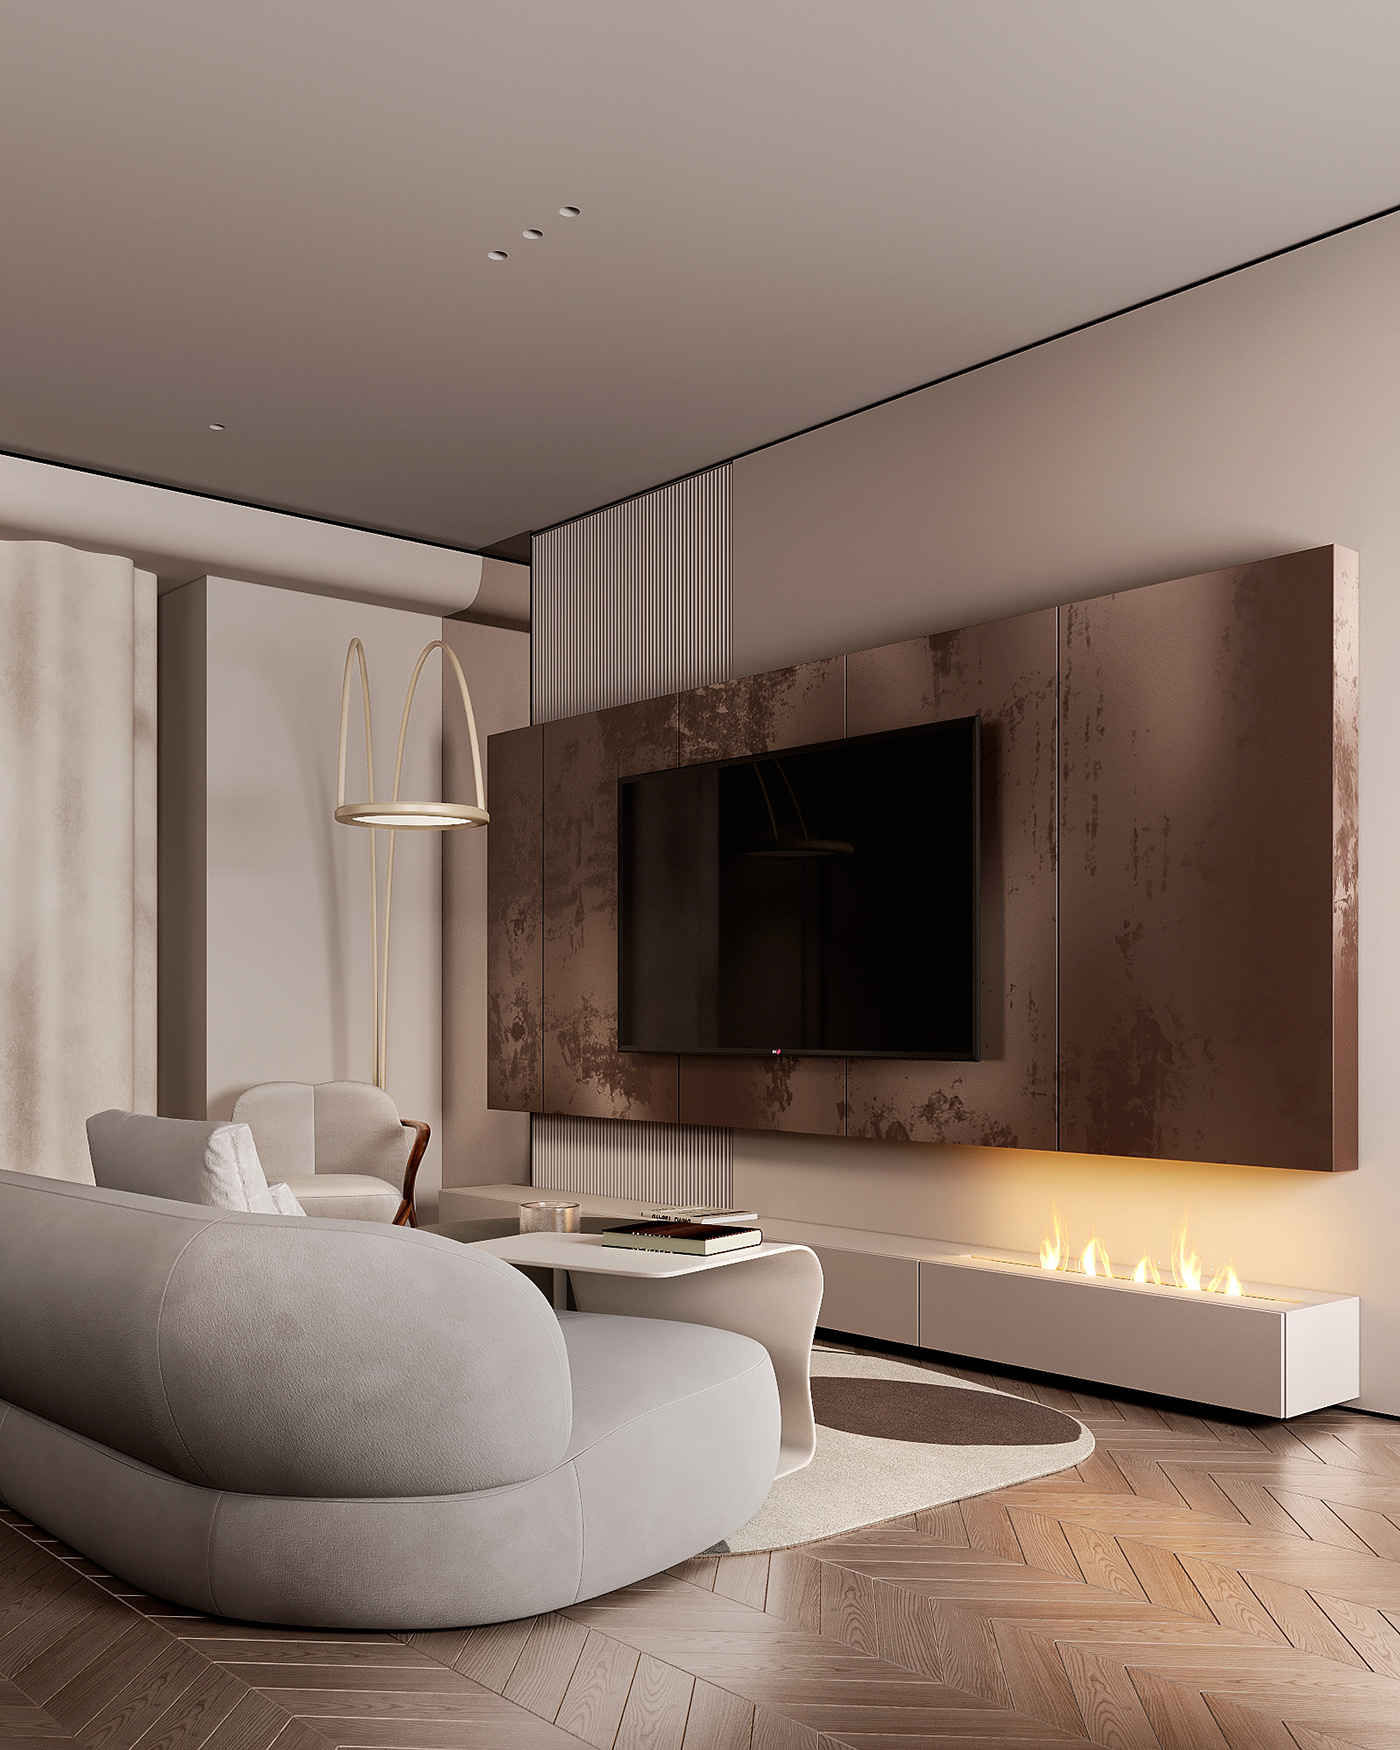 living Interior visualization modern interior design  architecture Luxury Design luxury bedroom design Modern Design